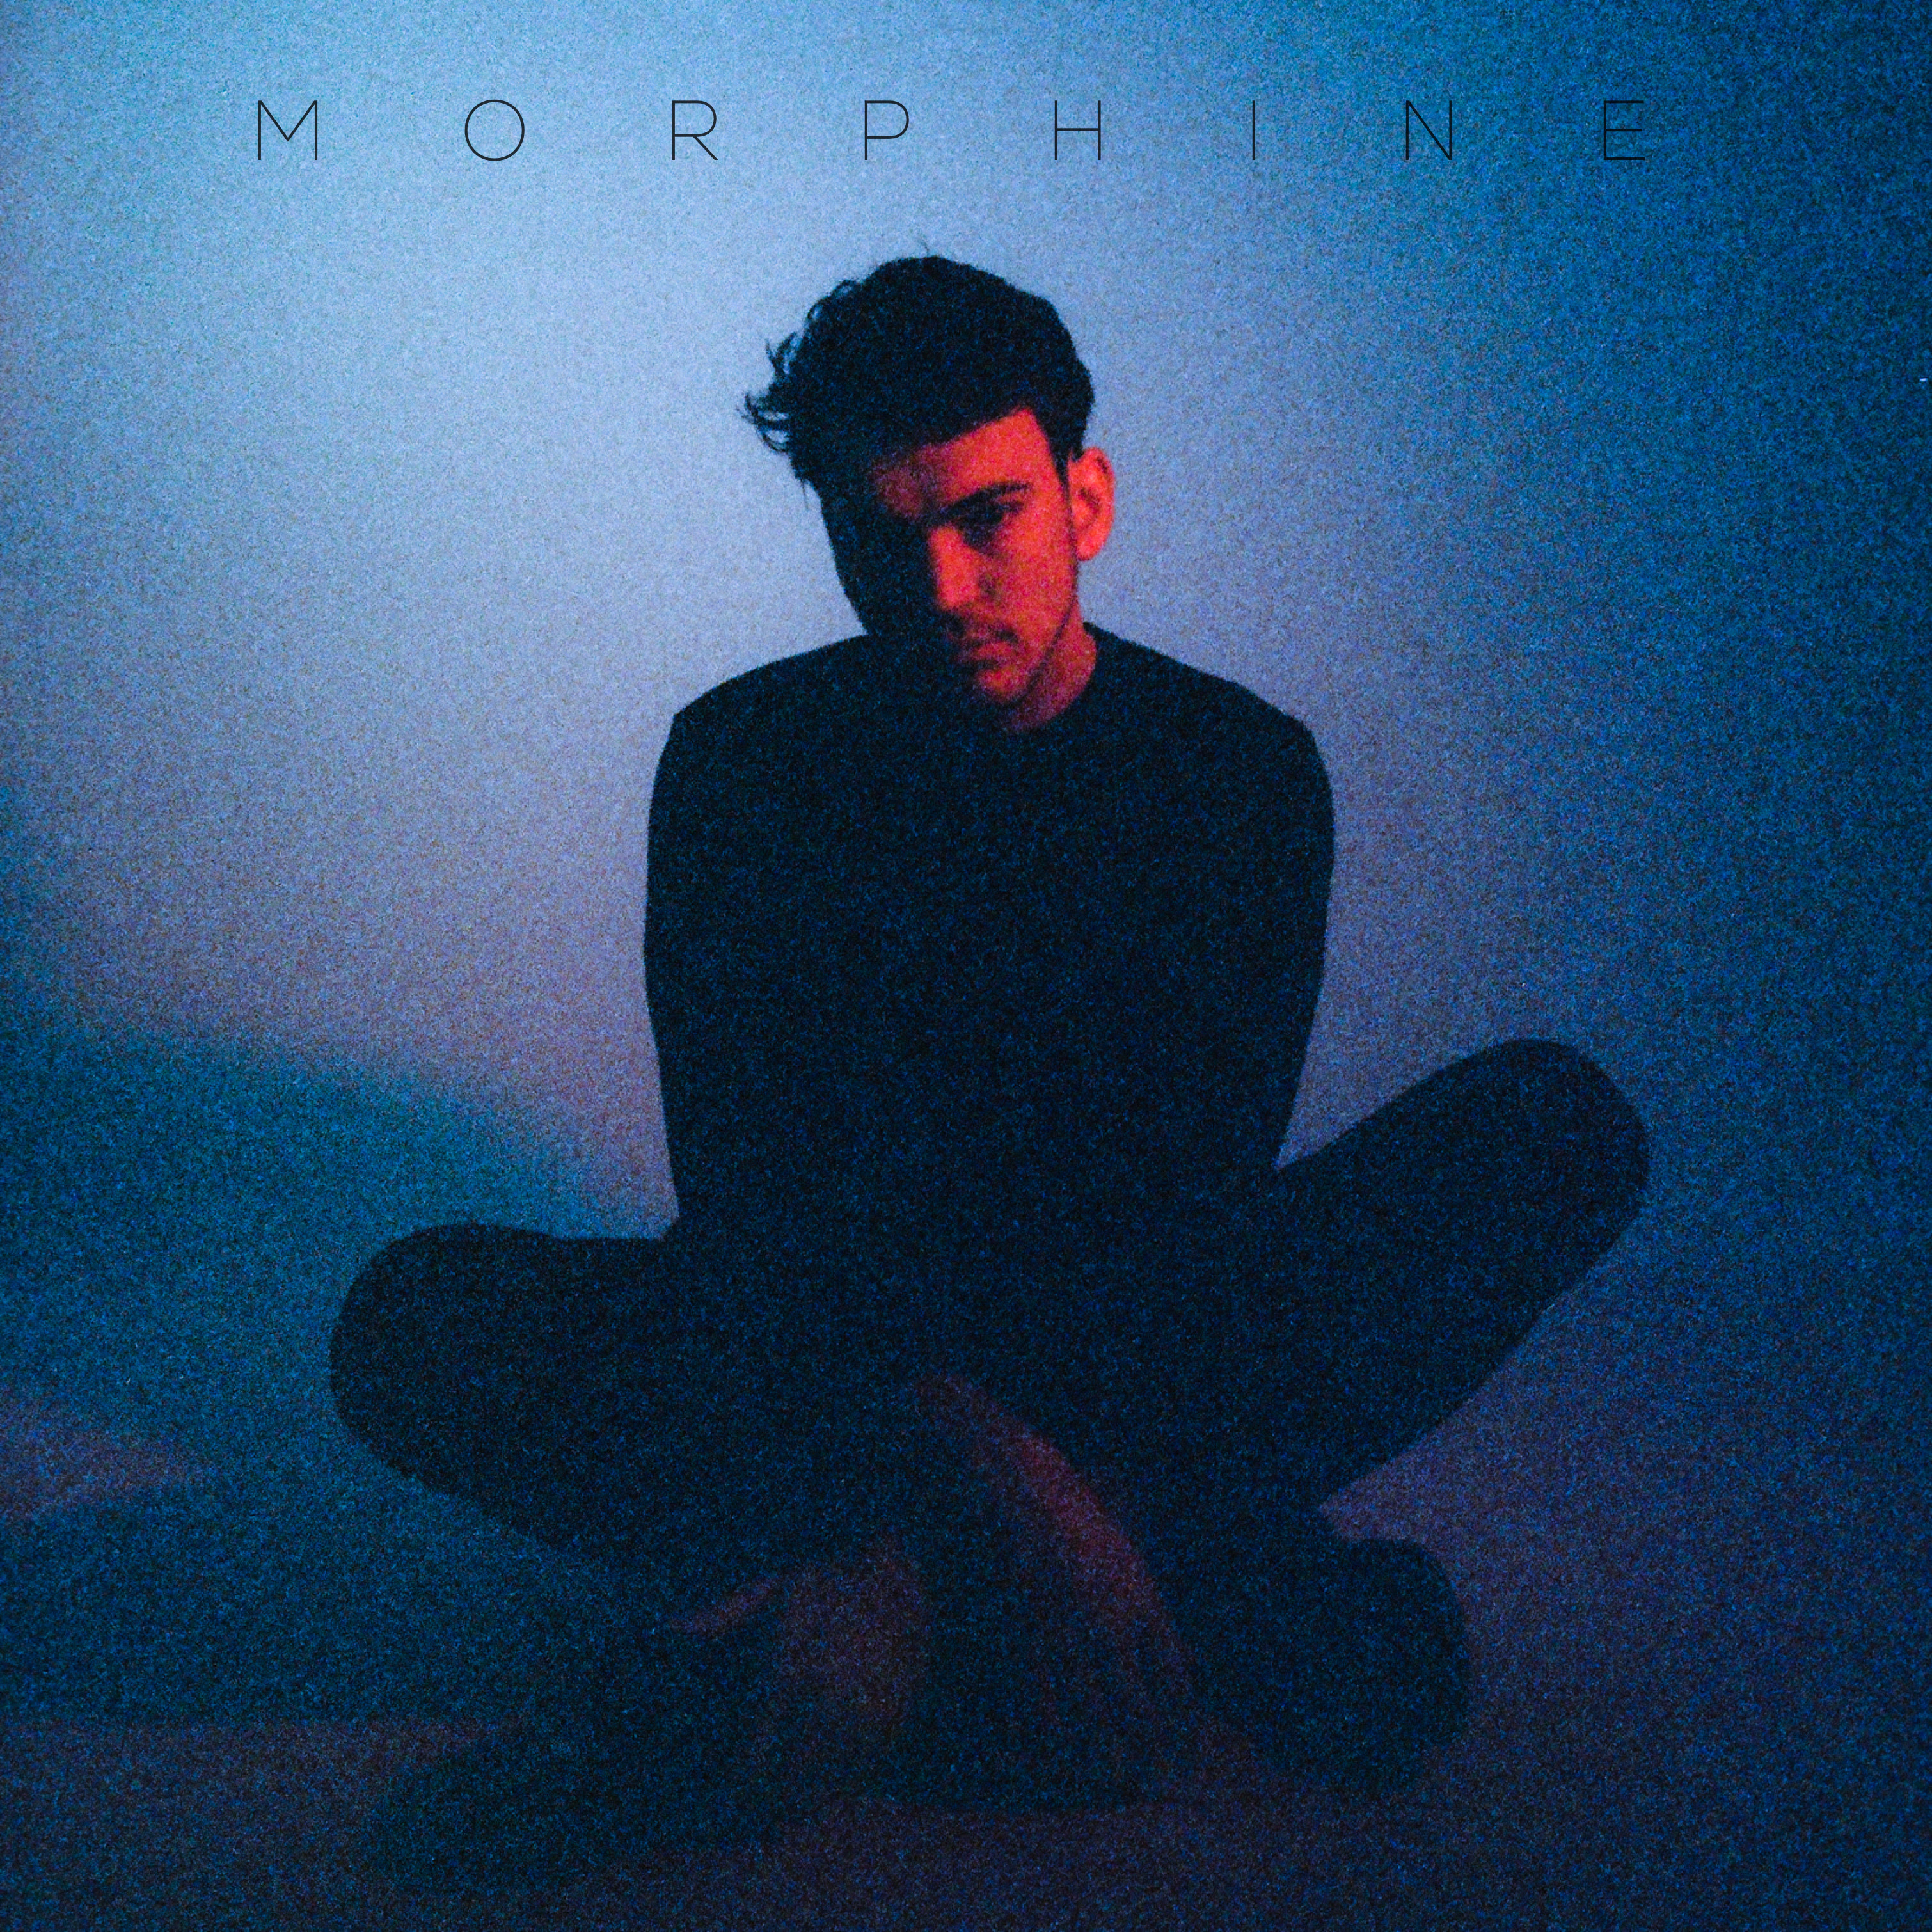 SPOTLIGHT: Singer-Songwriter Cade Hoppe Releases Powerful Single “Morphine”